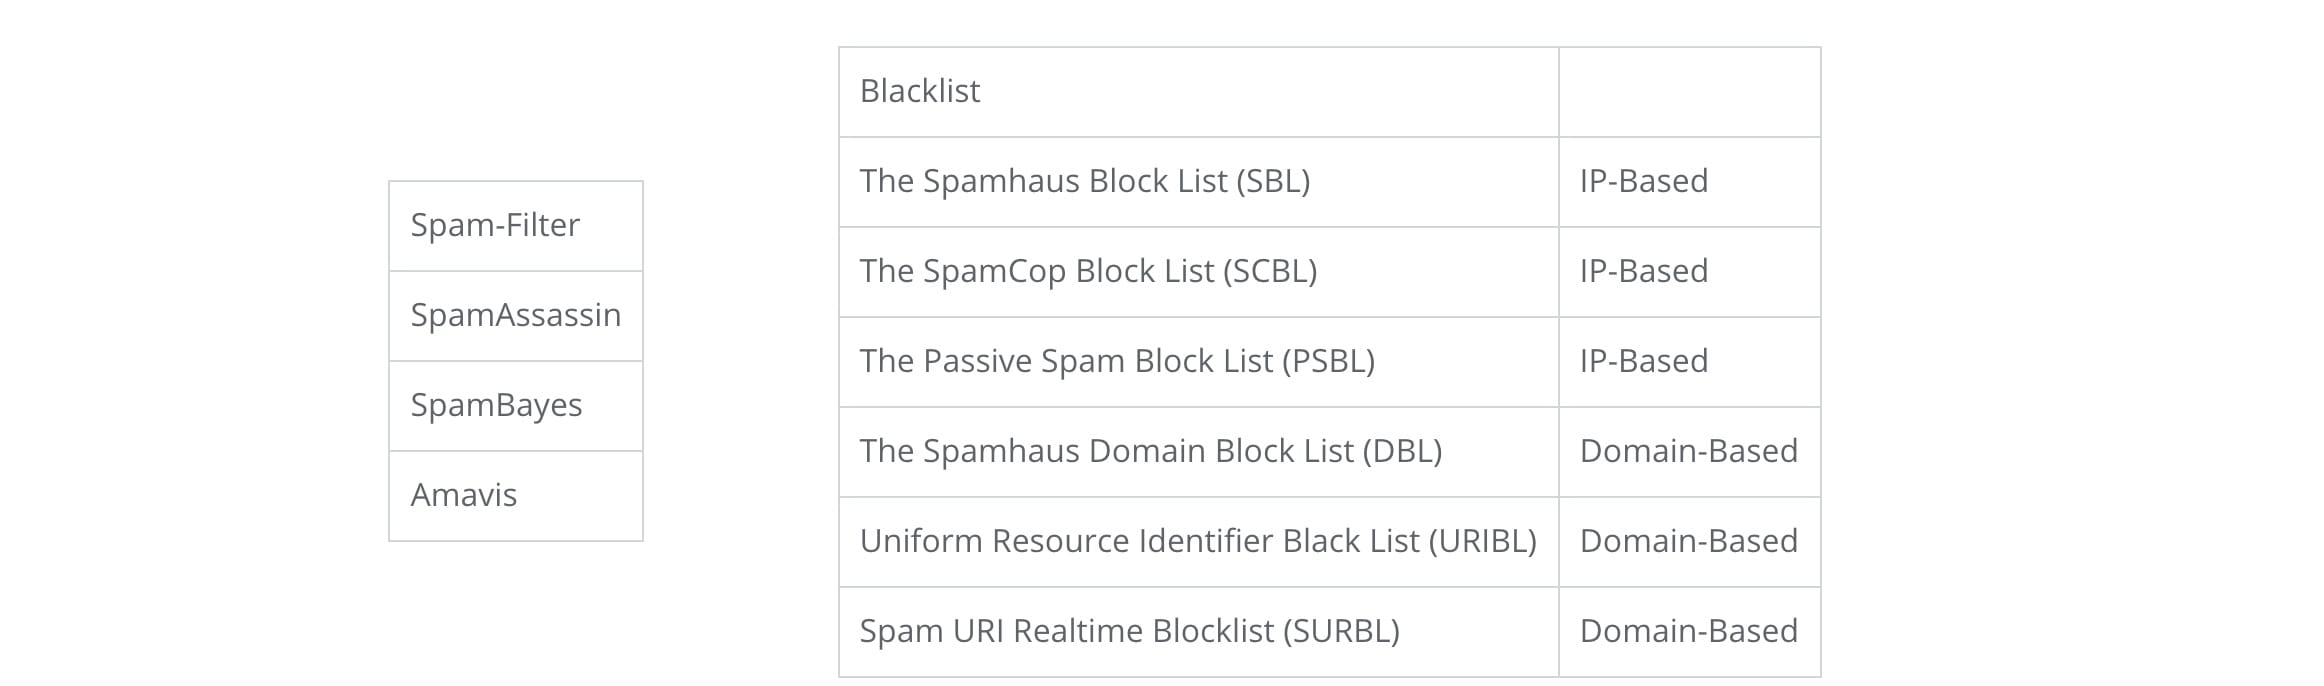 Warum-landen-meine-e-mails-im-spam-blacklists-blacklists-einstein1